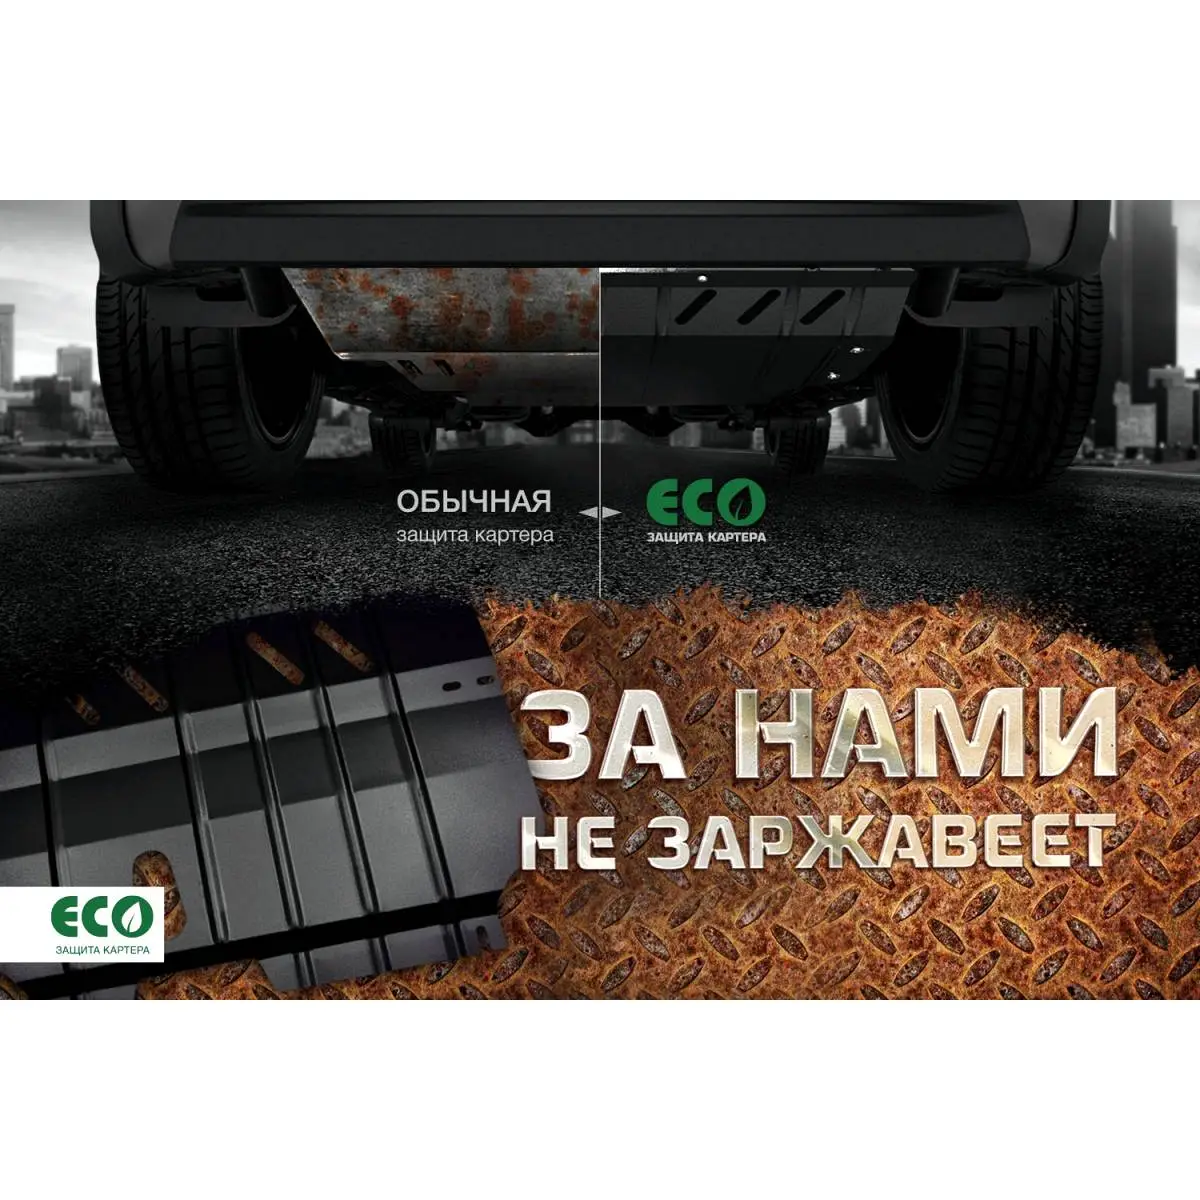 Комплект крепежа защиты картера Eco 4ETRWD eco4835022 24A 7OD 1437099153 изображение 6